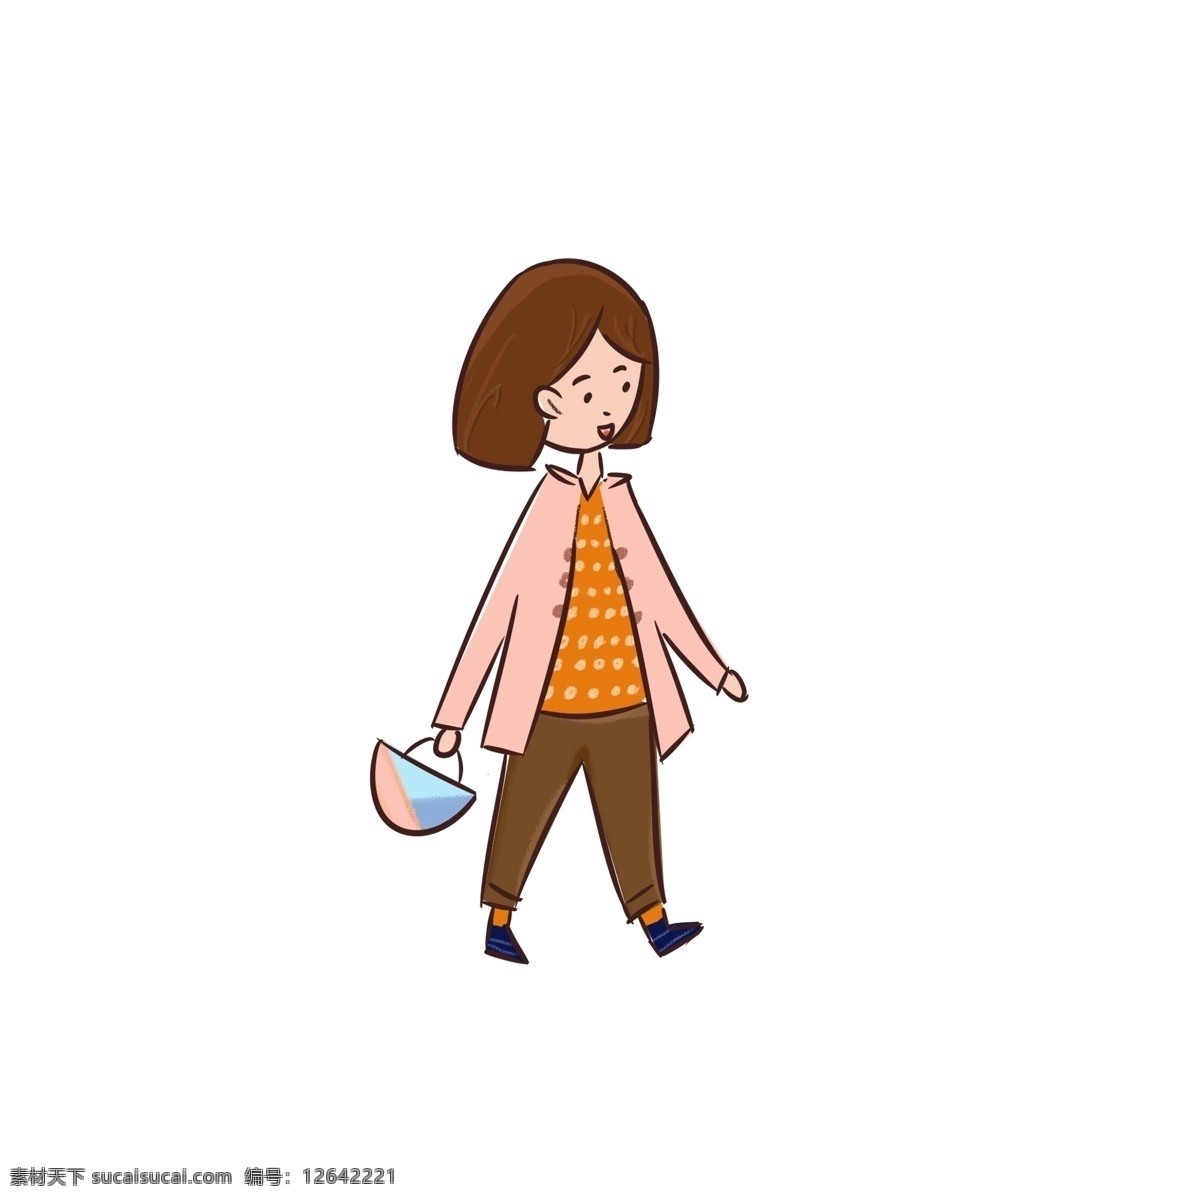 秋季 短发 少女 手提 购物袋 散步 商用 元素 秋装 购物 儿童插图